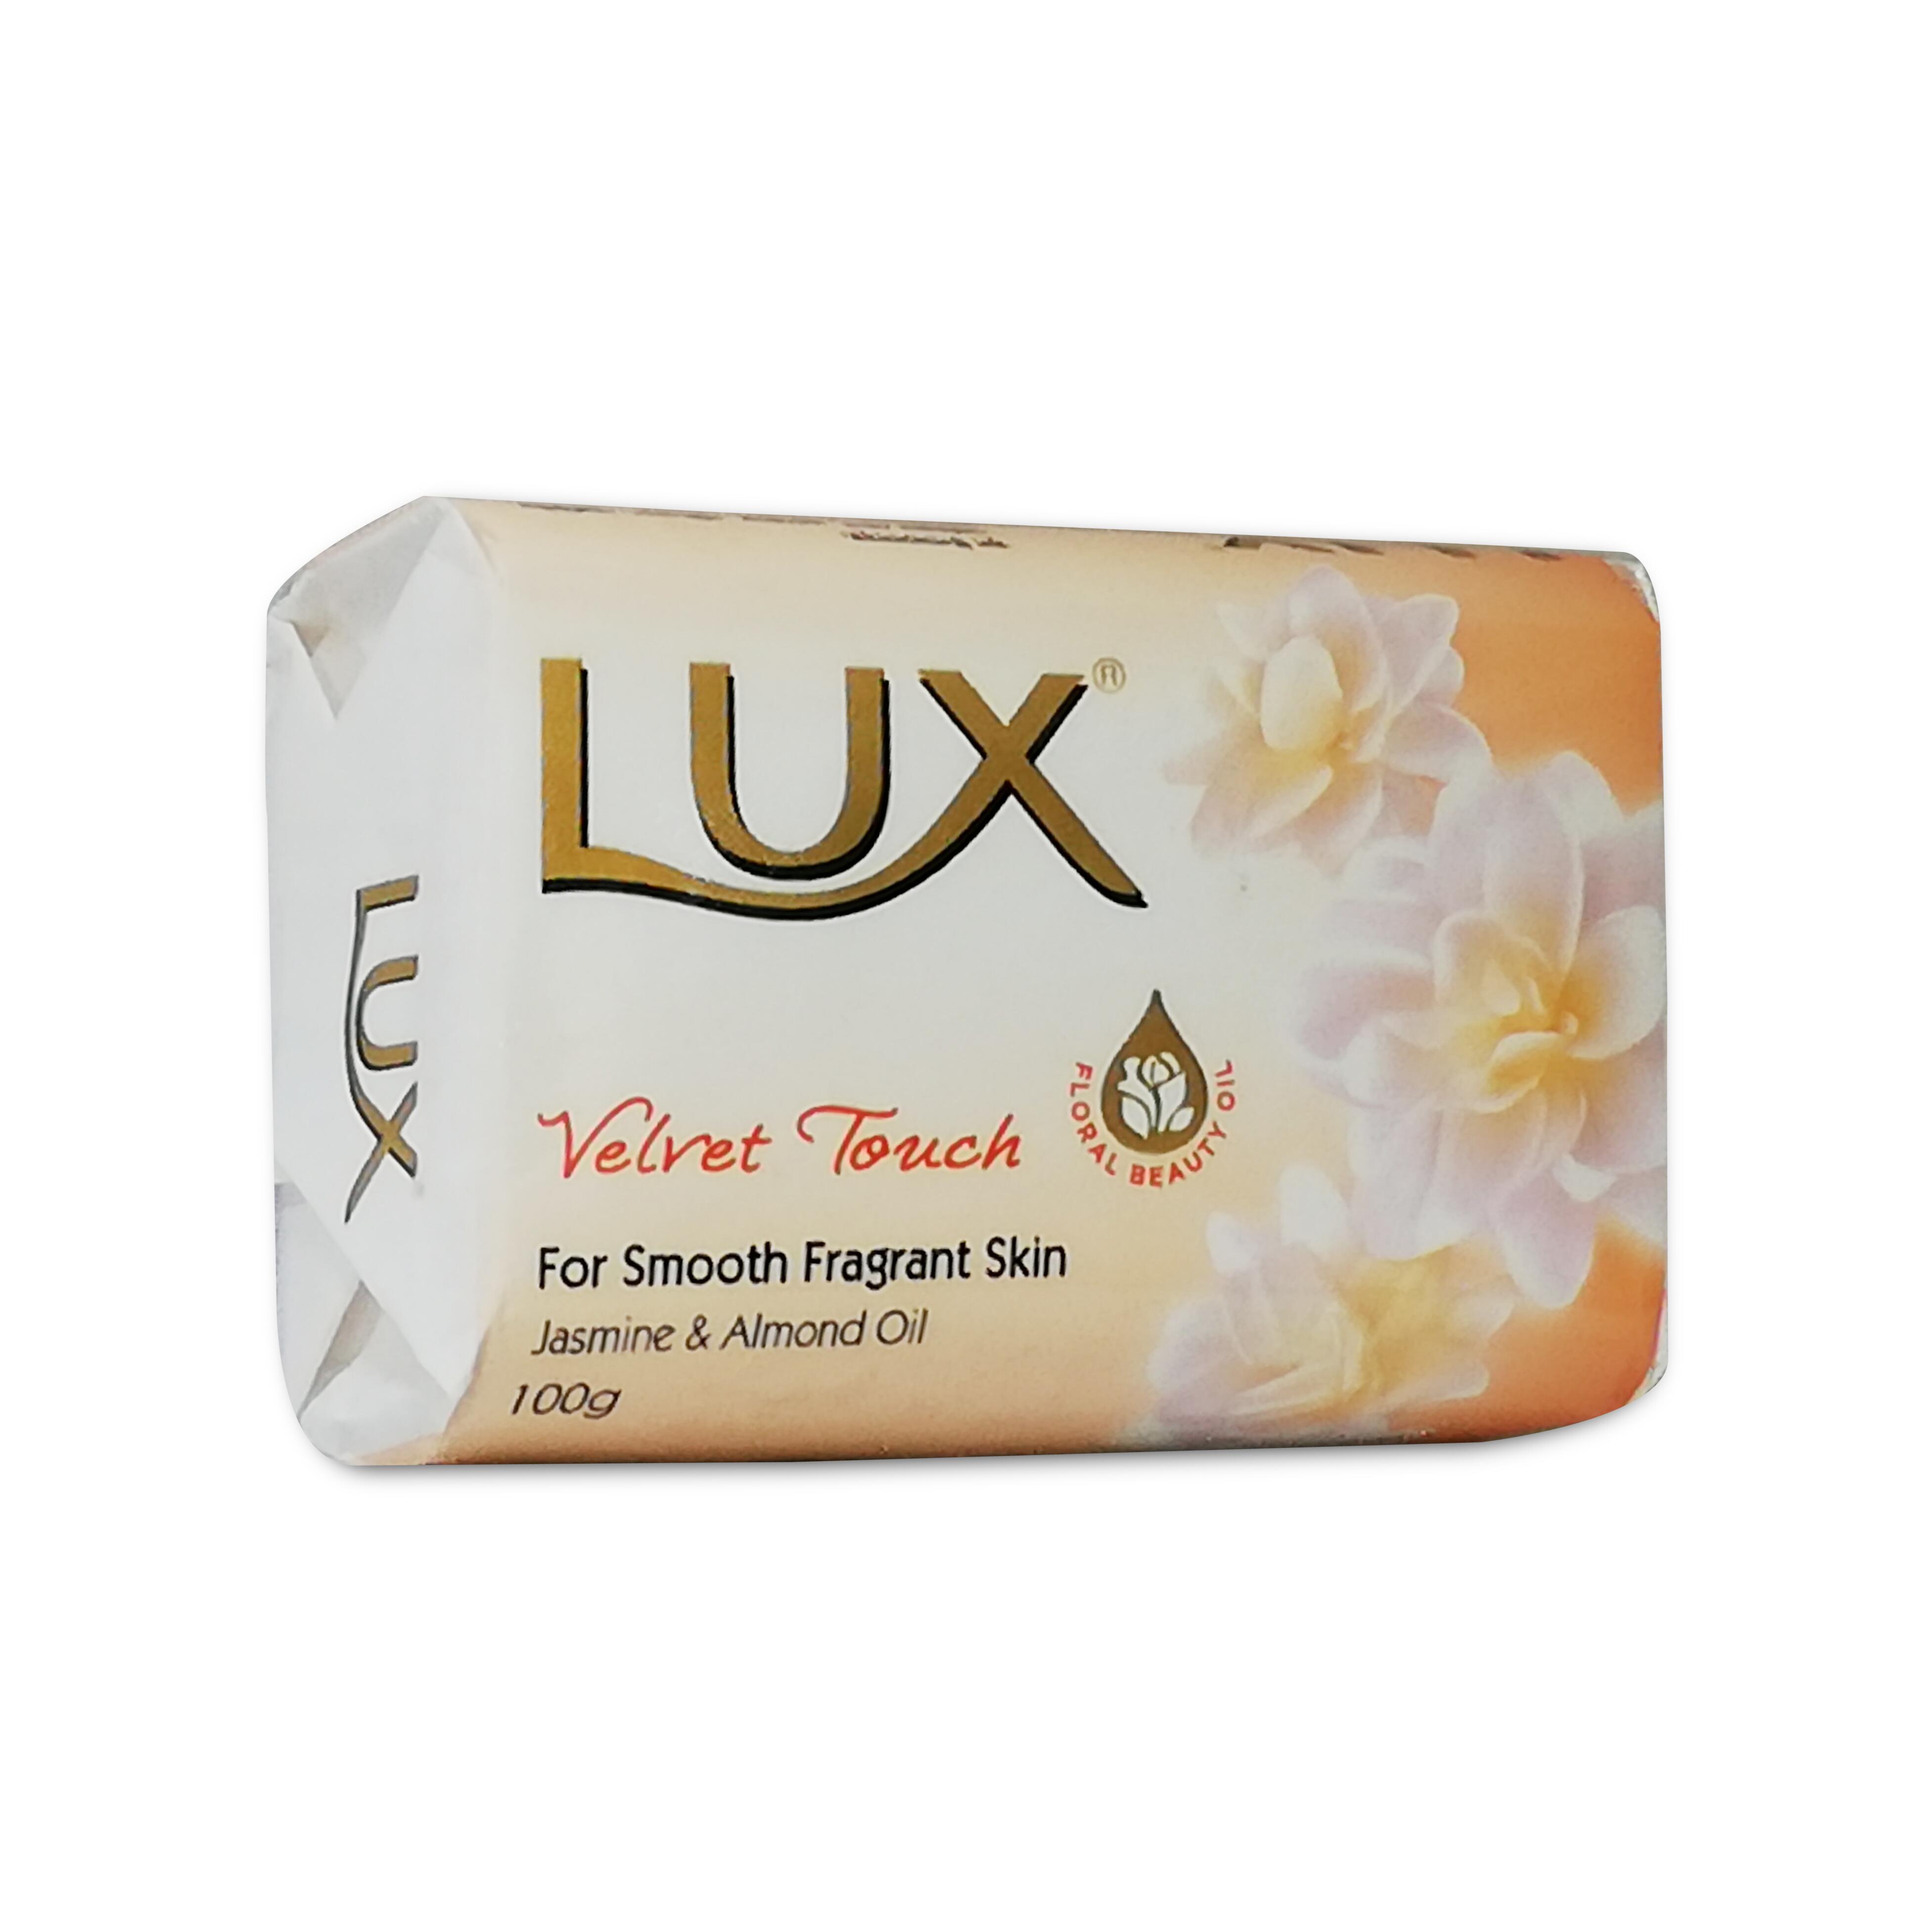 Lux Velvet Touch Jasmine & Almond Oil 100g